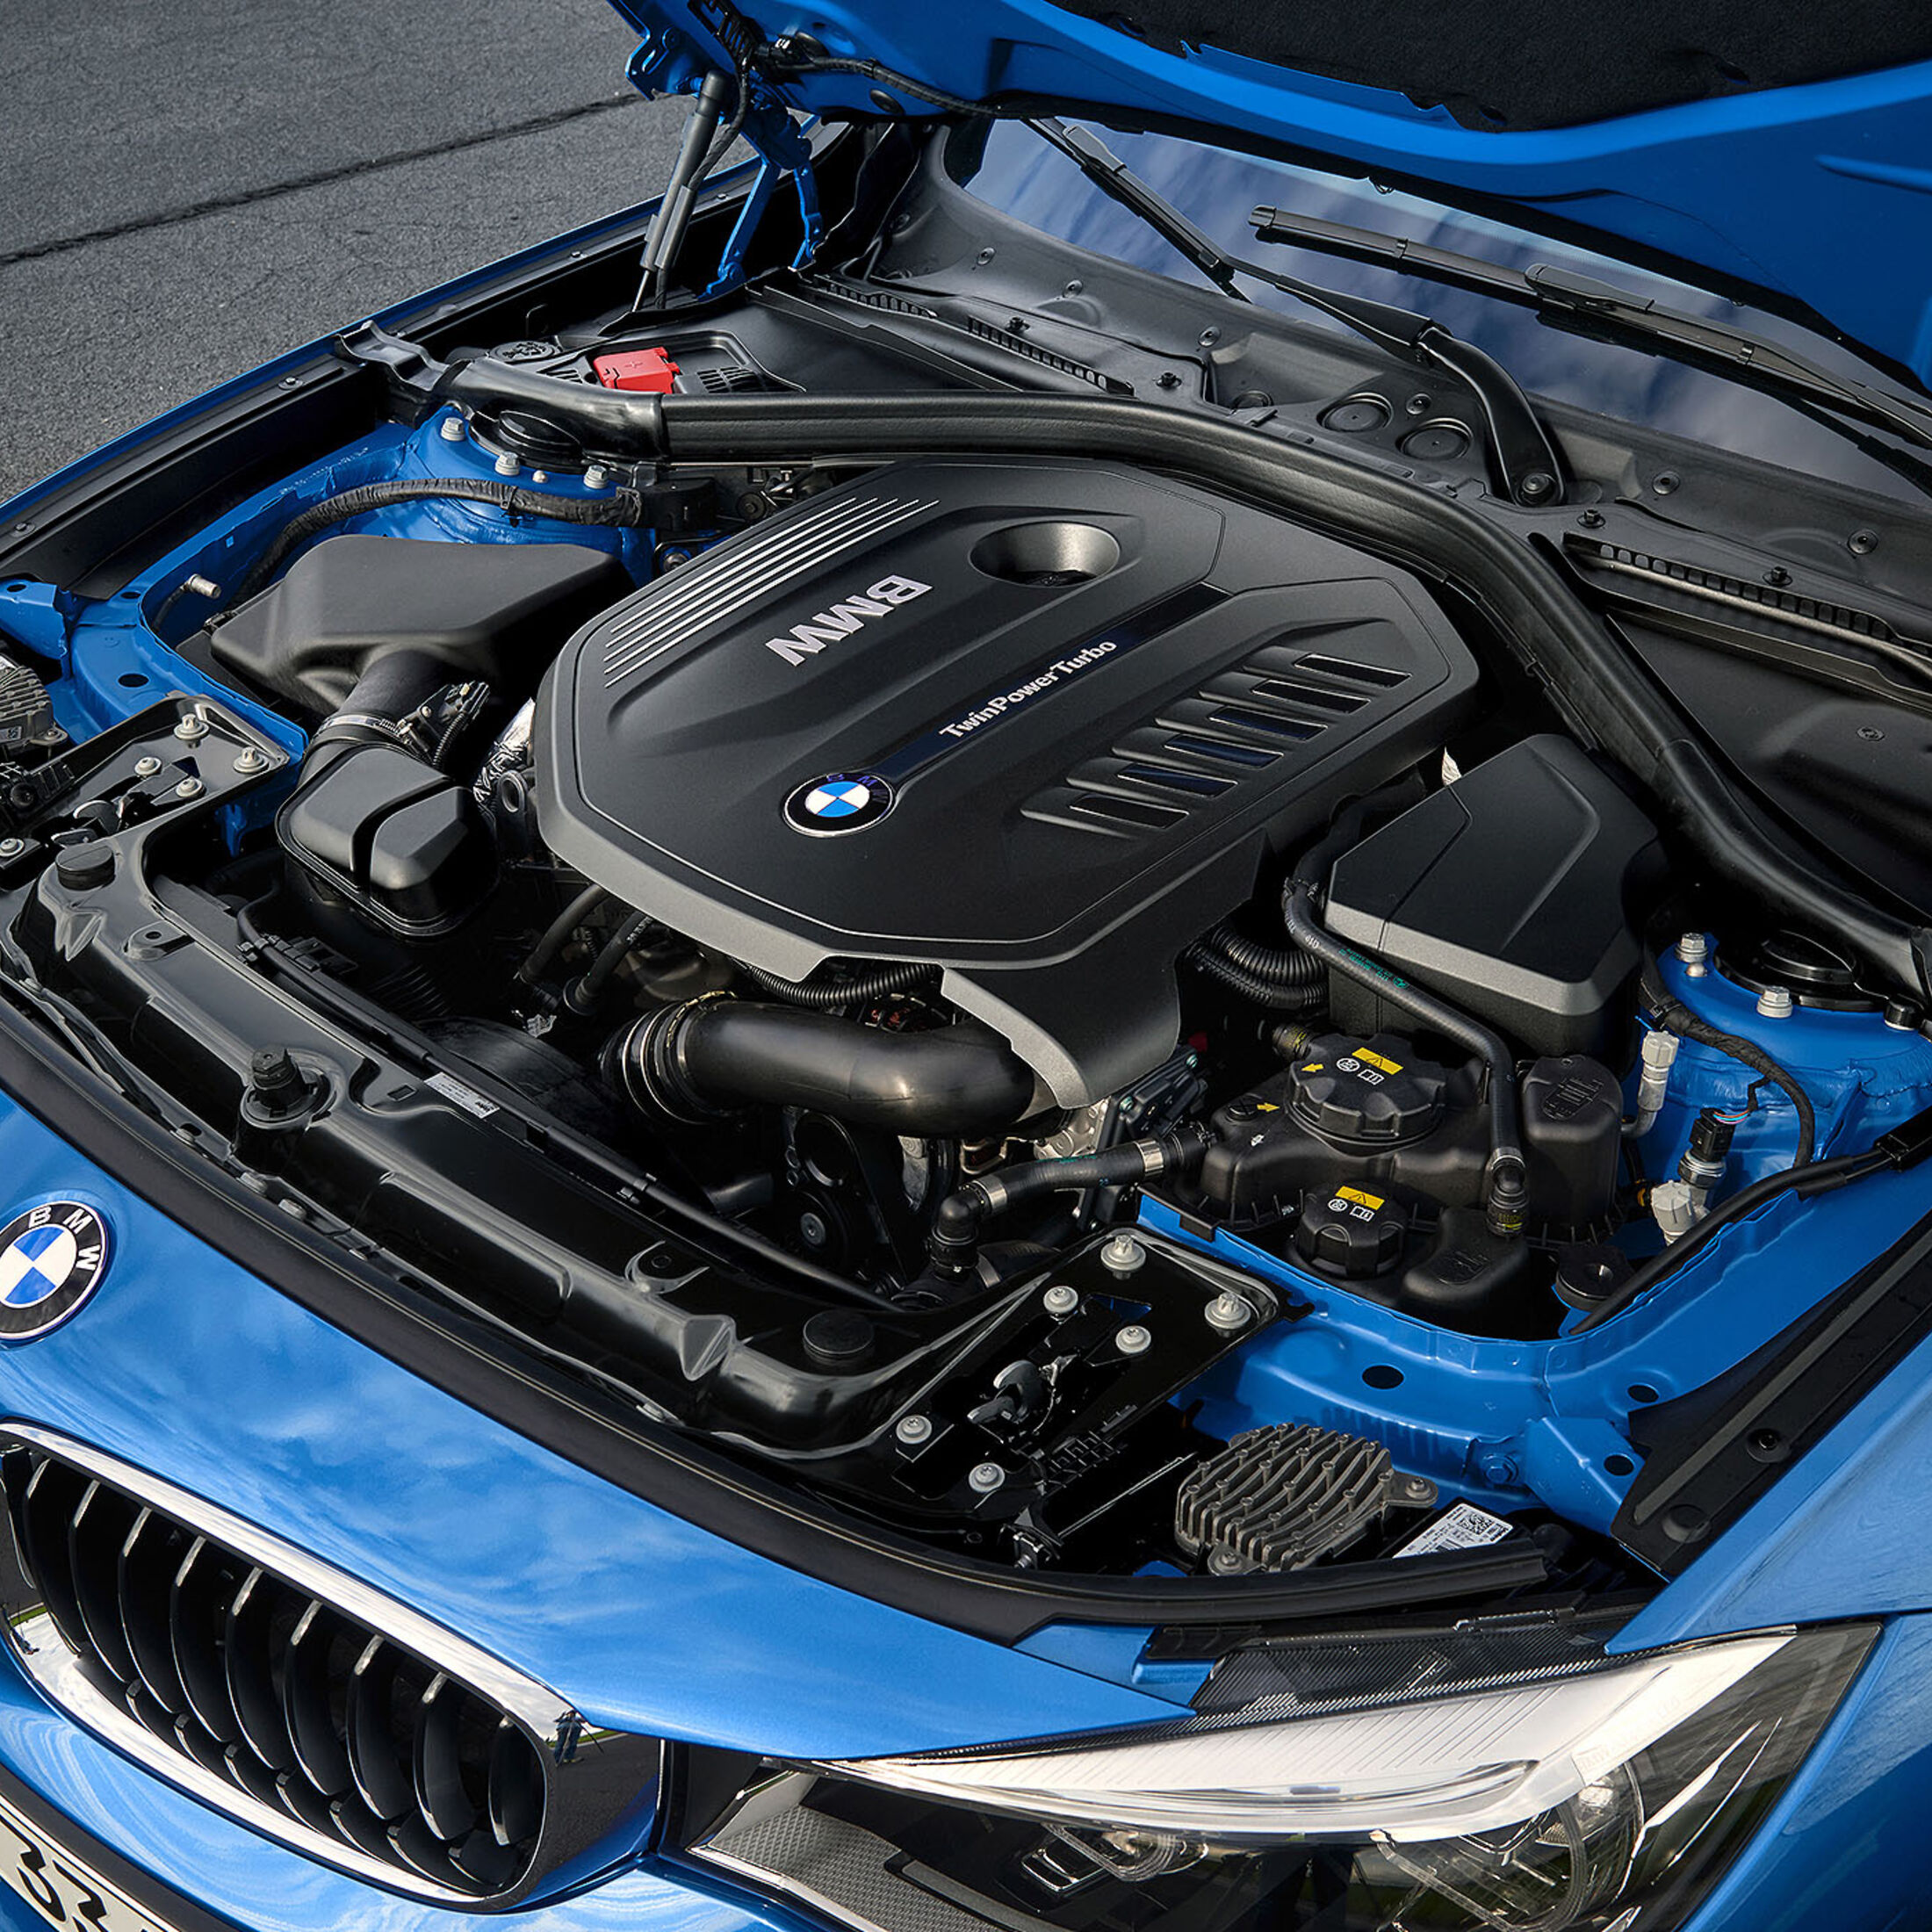 https://imgr1.auto-motor-und-sport.de/BMW-B57-Reihensechszylinder-Dieselmotor-jsonLd1x1-52dc2a70-1613245.jpg